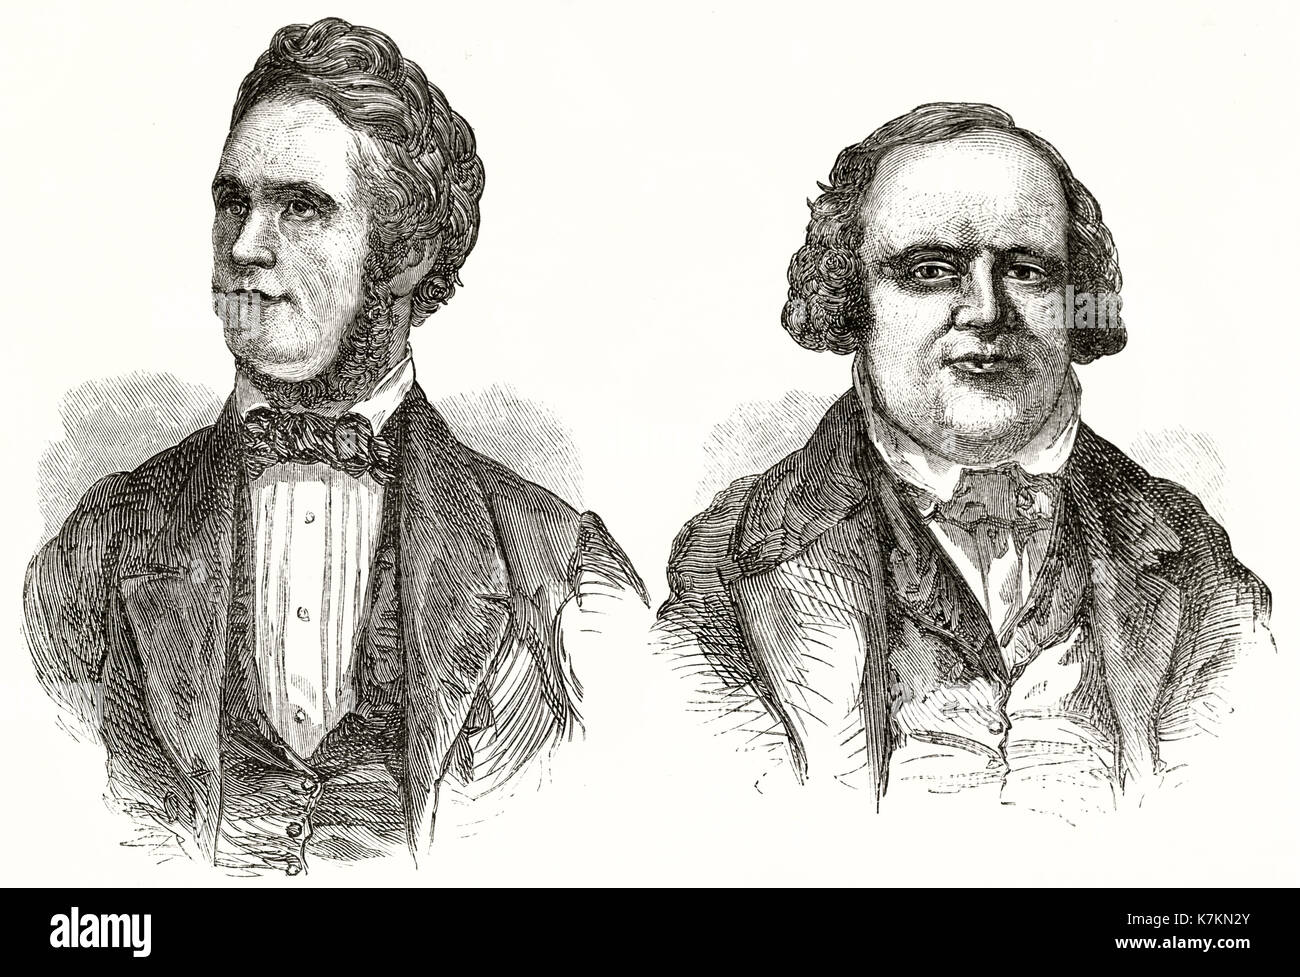 Vieux portraits gravés de J. Taylor (1808 - 1887) et W. Richards (1804 - 1854), les dirigeants mormons. Par Ferogio après Remy, publ. sur le Tour du Monde, Paris, 1862 Banque D'Images